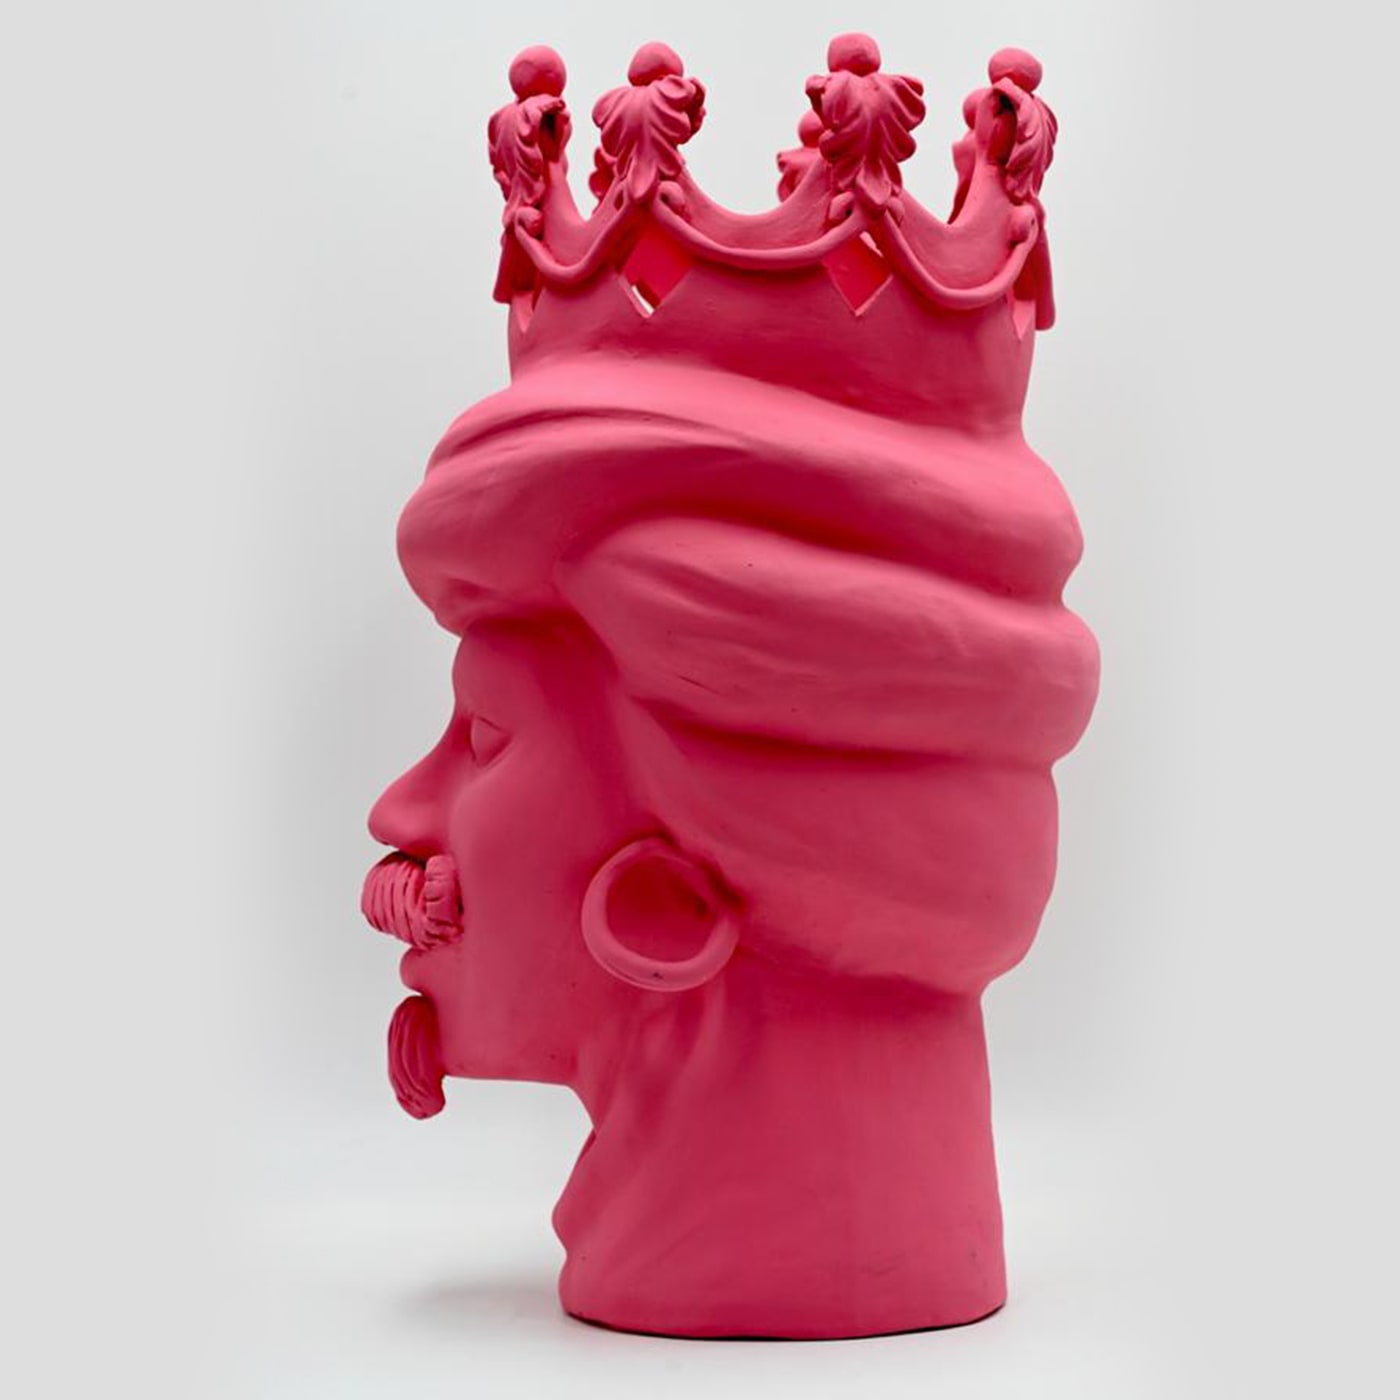 Moor's Head Pink Sculpture